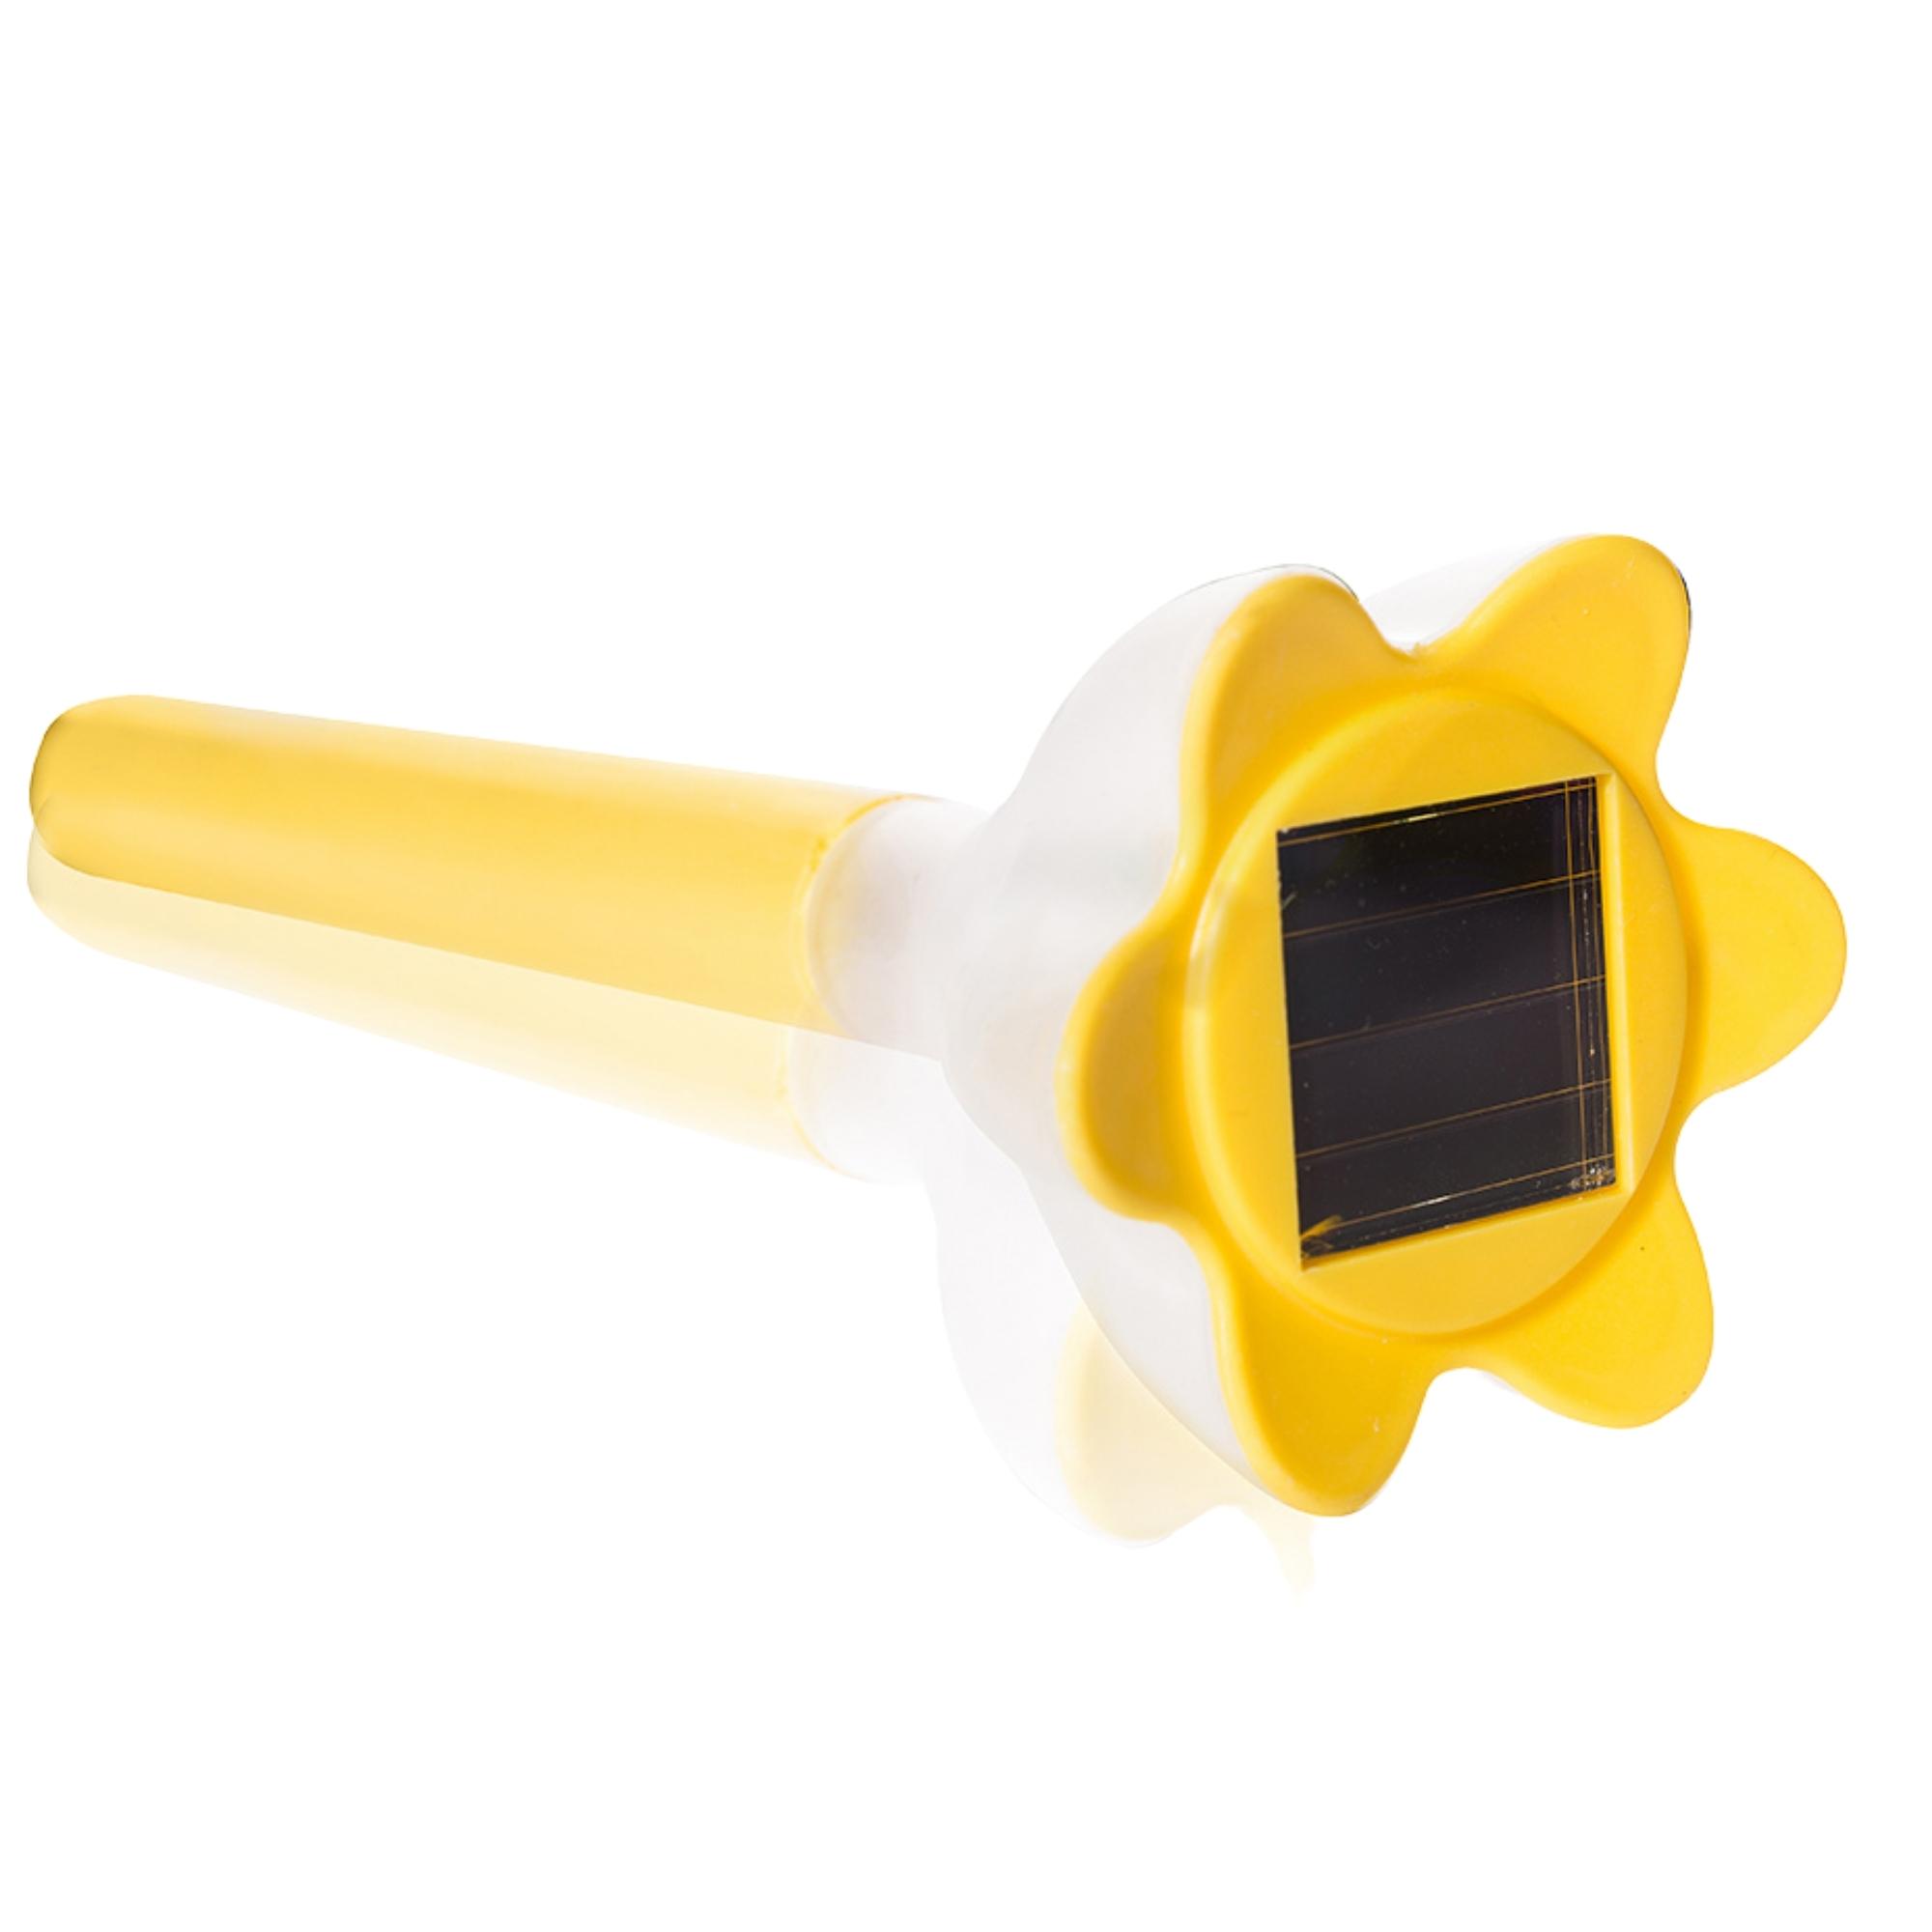 USL-C-419-PT305 Cадовый светильник на солнечной батарее Yellow crocus. Серия Classic. Упаковка-пленка.